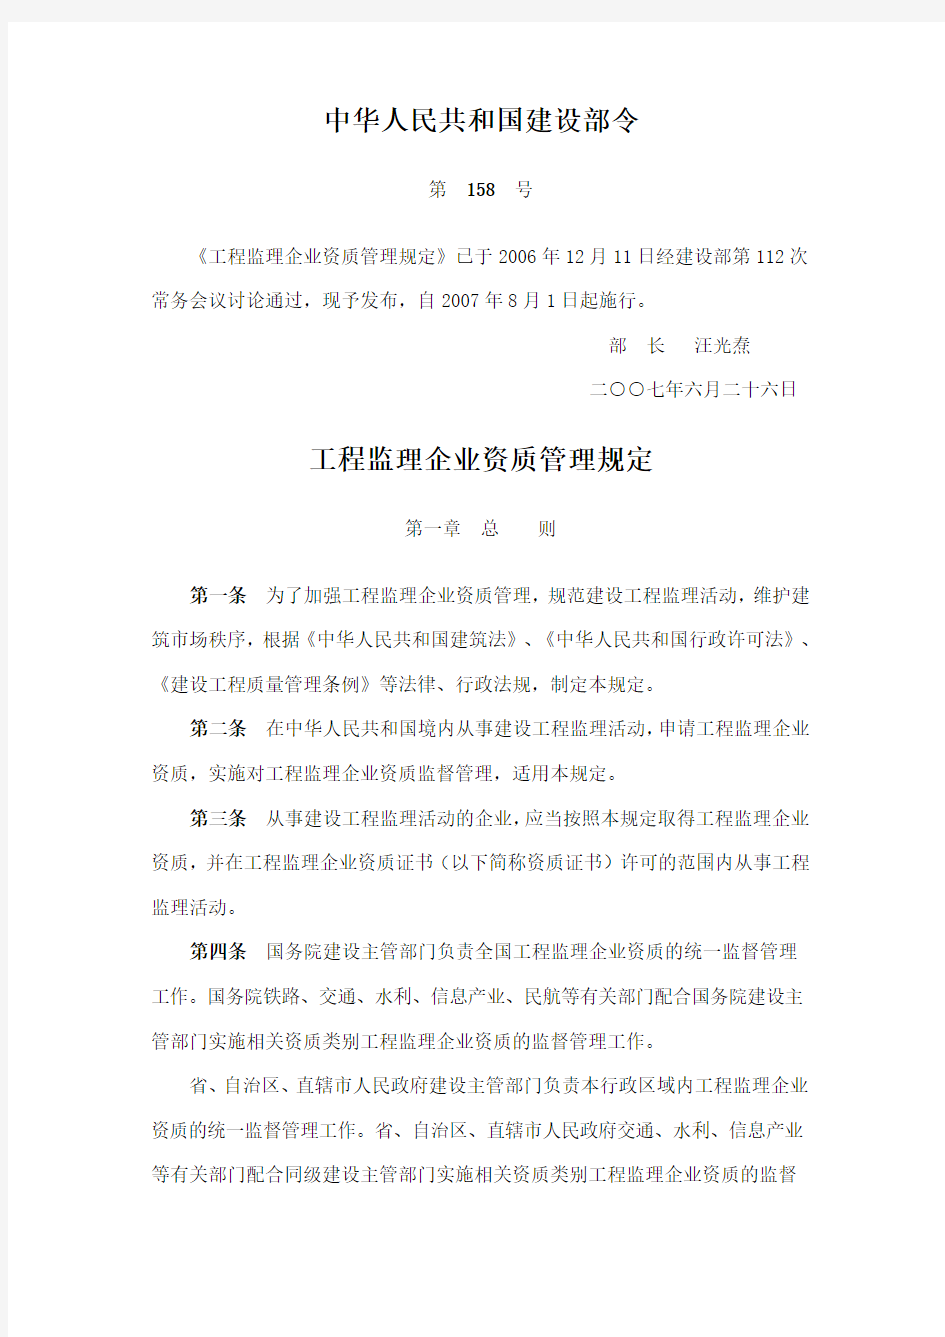 《工程监理企业资质管理规定》中华人民共和国建设部令 第158号